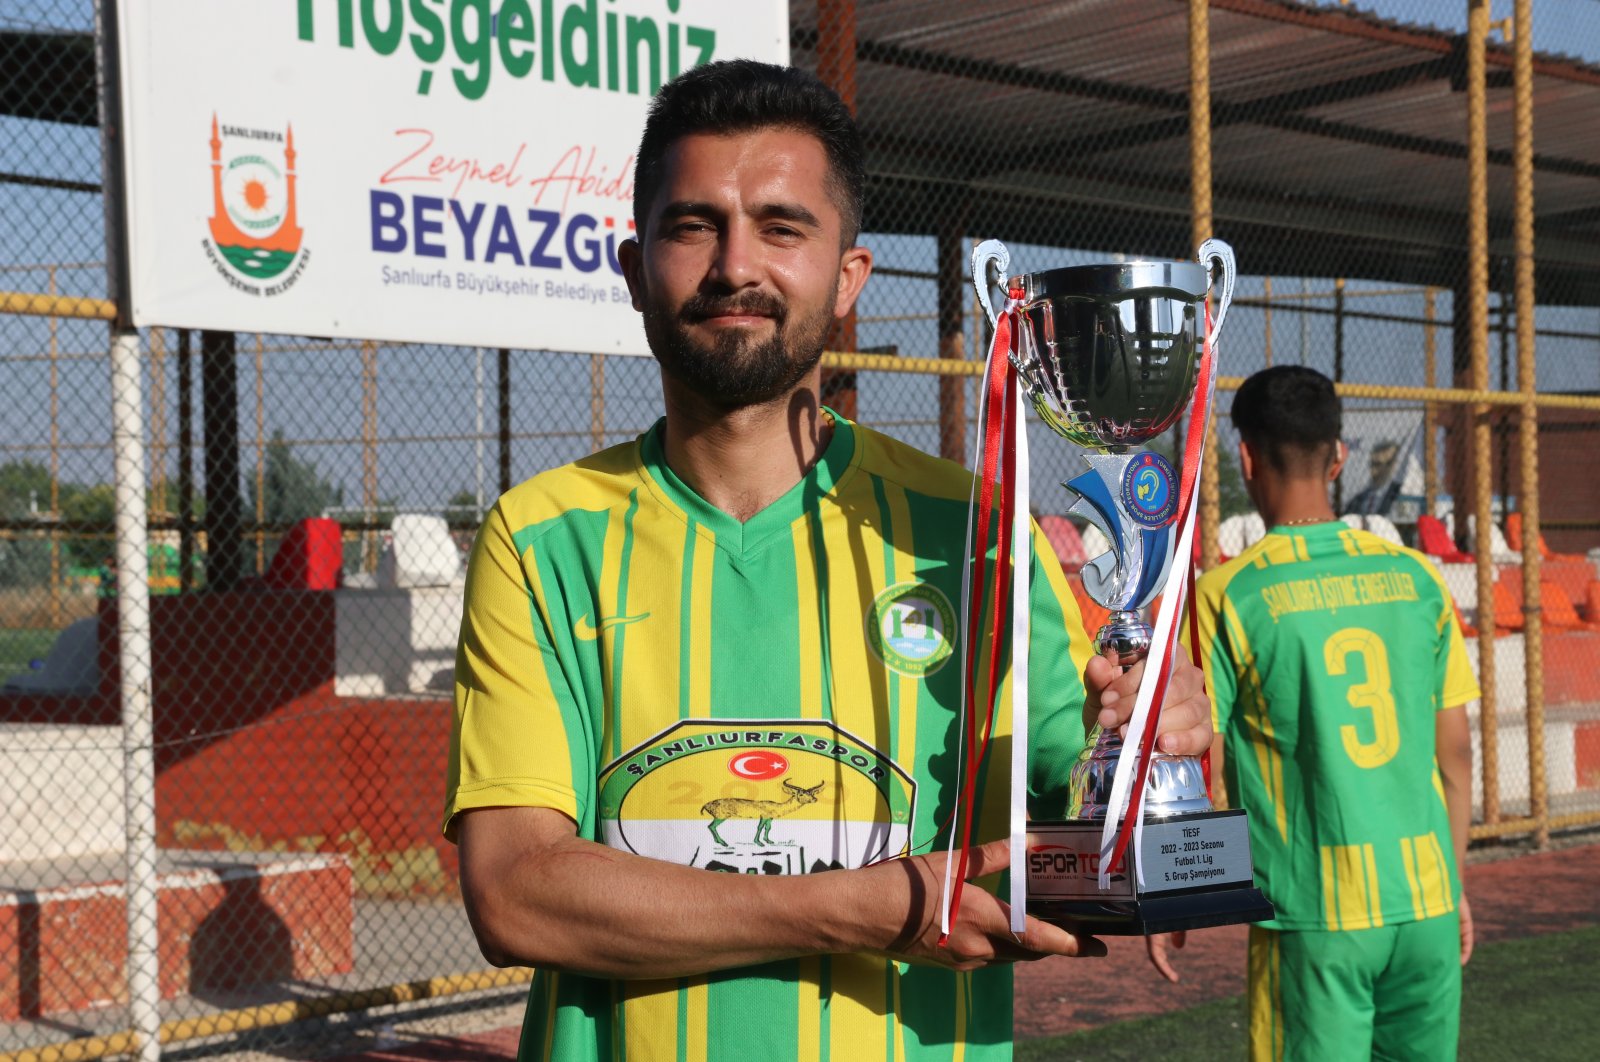 Şanlıurfa’nın işitme engelli Türk futbol takımı, uzun süredir Süper Lig’de kalacak bir takım arıyor.